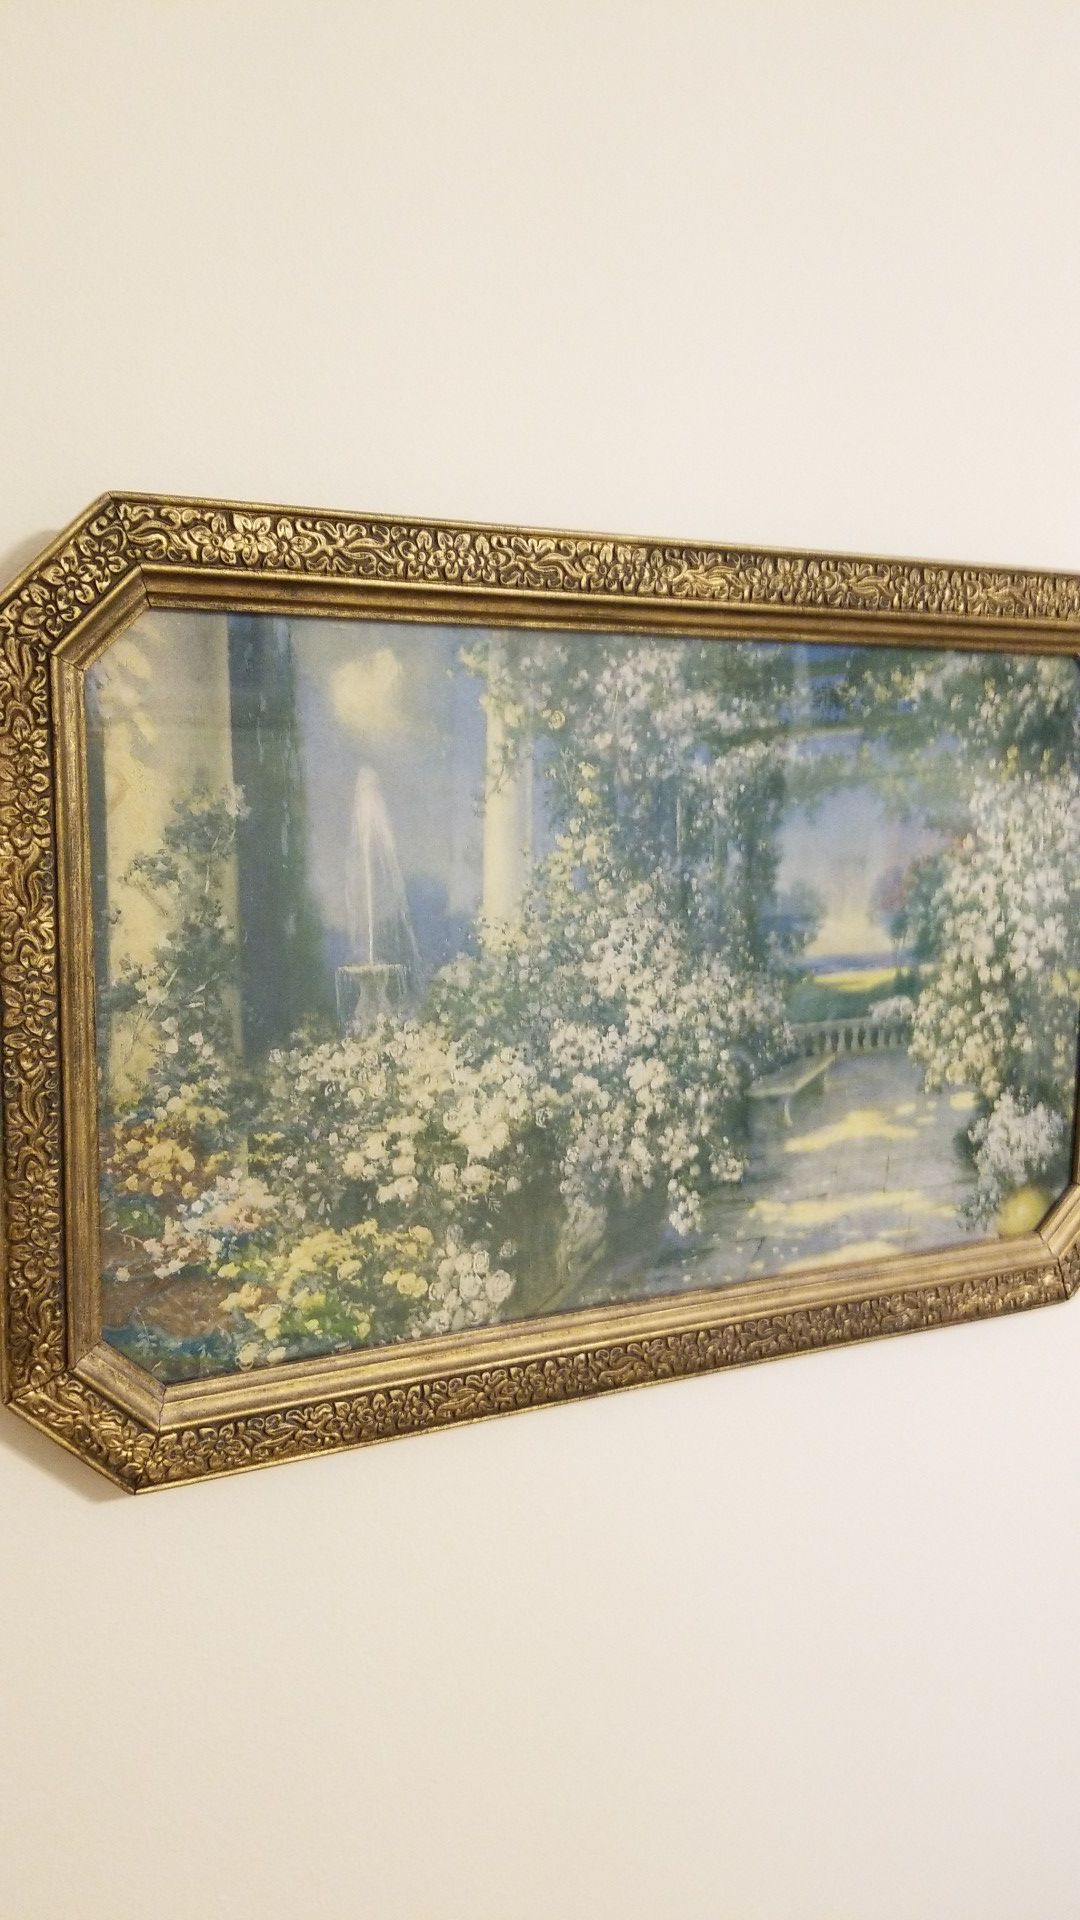 Antique framed art